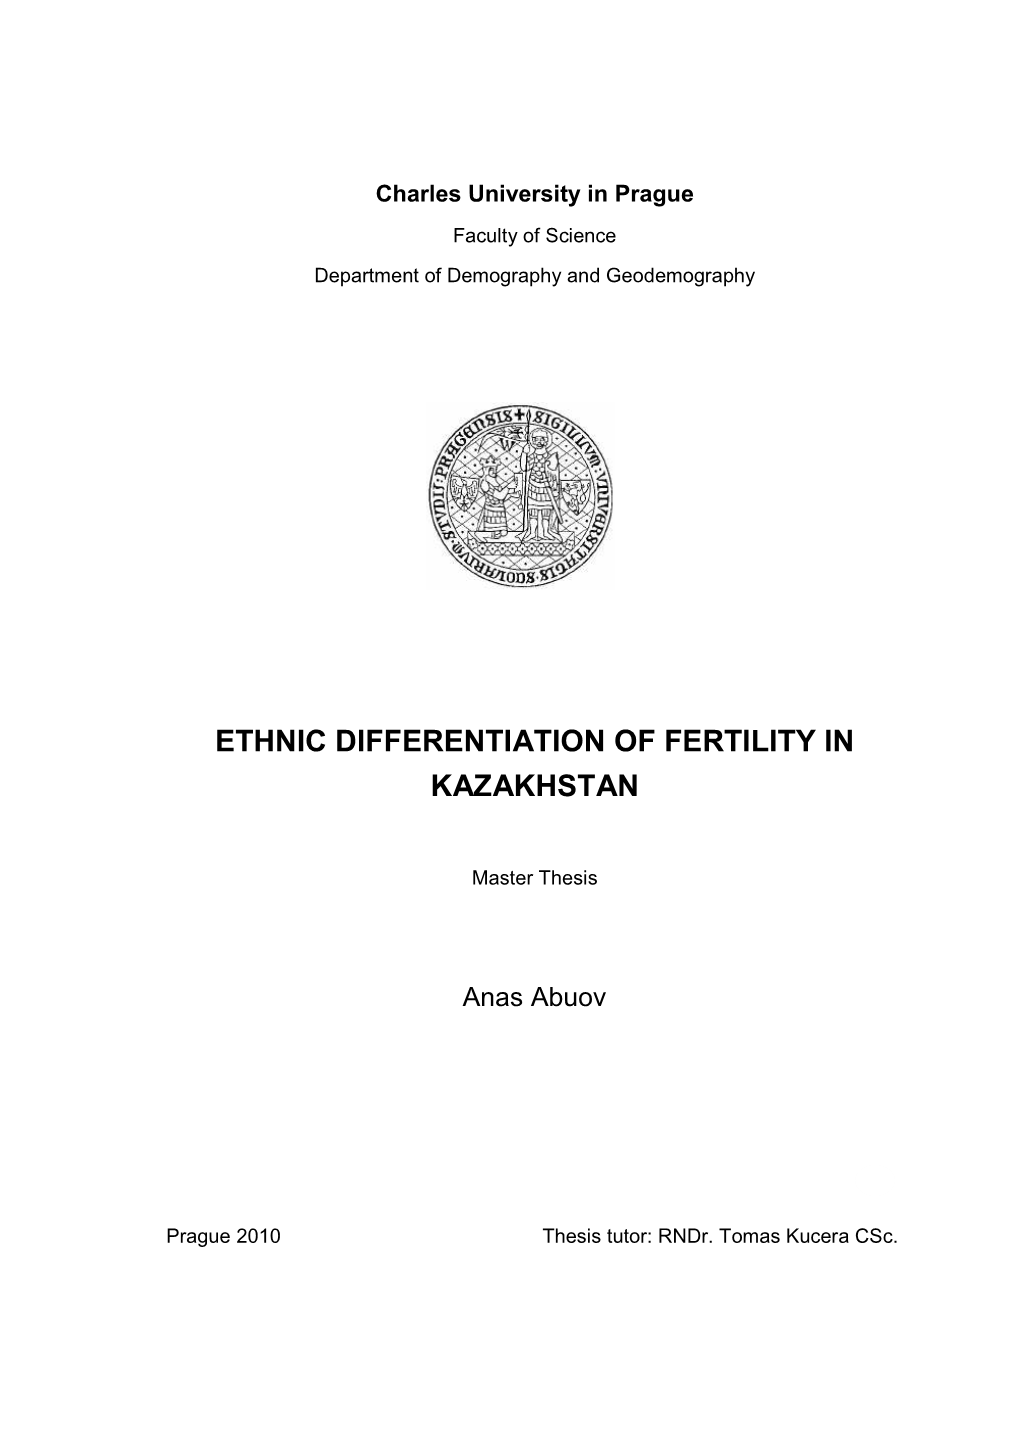 Ethnic Differentiation of Fertility in Kazakhstan